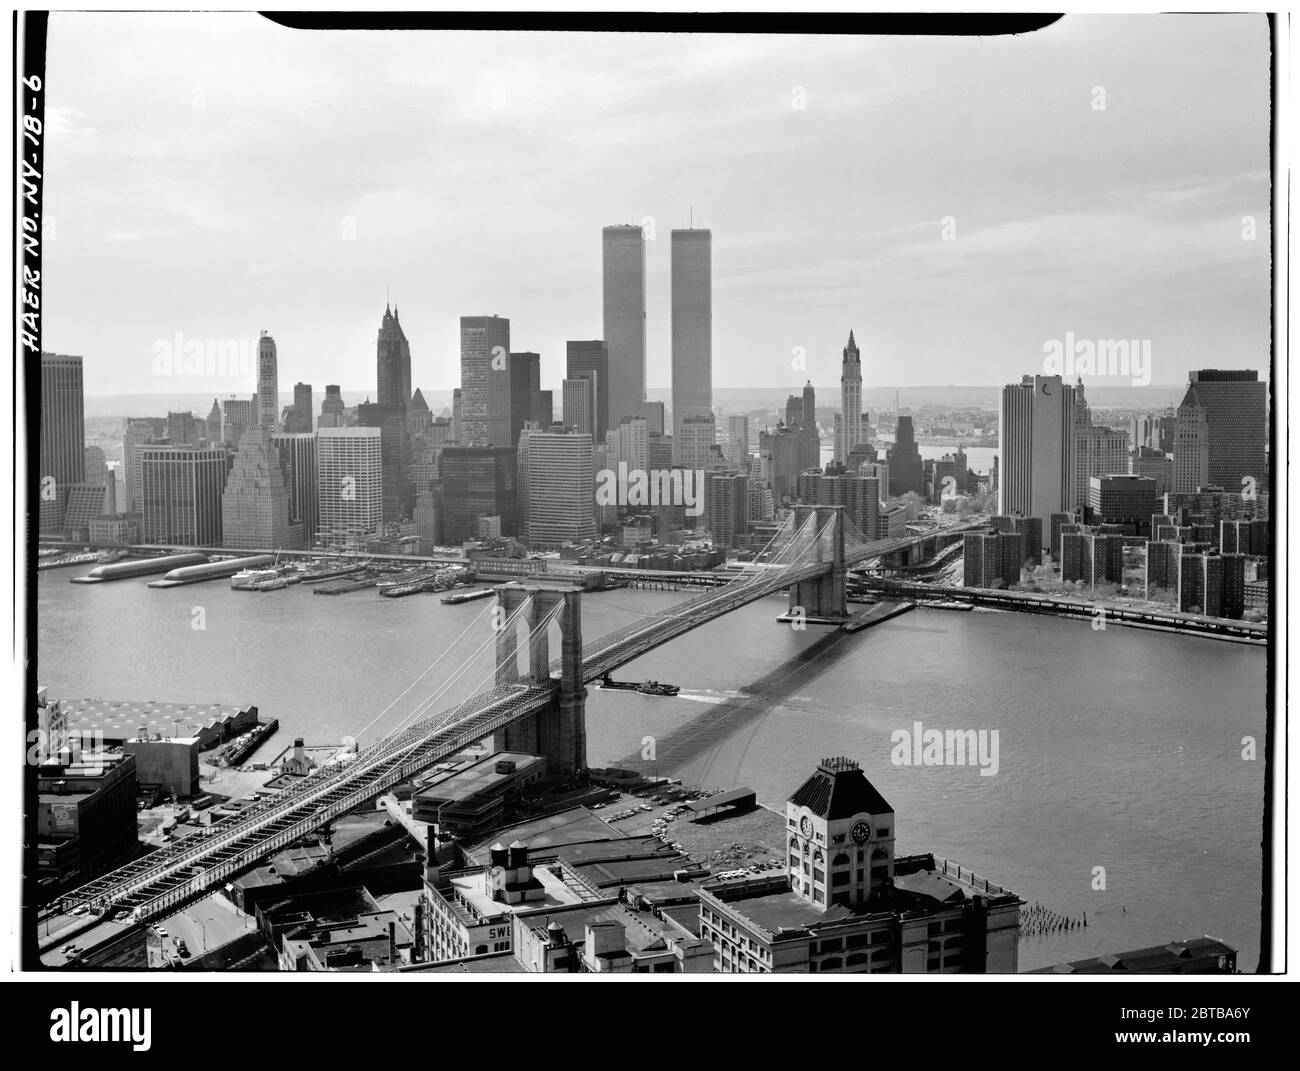 1978 , NEW YORK , USA : Vista verso W verso Manhattan. - Ponte di Brooklyn, fiume Spanning East tra Park Row, Manhattan e Sands Street, Brooklyn, New York, New York County, New York. Il grande ponte sospeso East River, aperto il giorno 24 maggio 1883 -- collegando le città di New York e Brooklyn . Foto di Jack Boucher ( immagini del Governo degli Stati Uniti ) - PONTE DI BROOKLYN - FOTO STORICHE - STORIA - GEOGRAFIA - GEOGRAFIA - paesaggio - paesaggio - veduta - panorama - fiume fiume hudson - paesaggio - TORRI GEMELLE - TORRI GEMELLE - TORRI GEMELLE - TORRI GEMELLE - TWIN TOWERS -- - NON PER USO PUBBLICITARIO ----N. Foto Stock